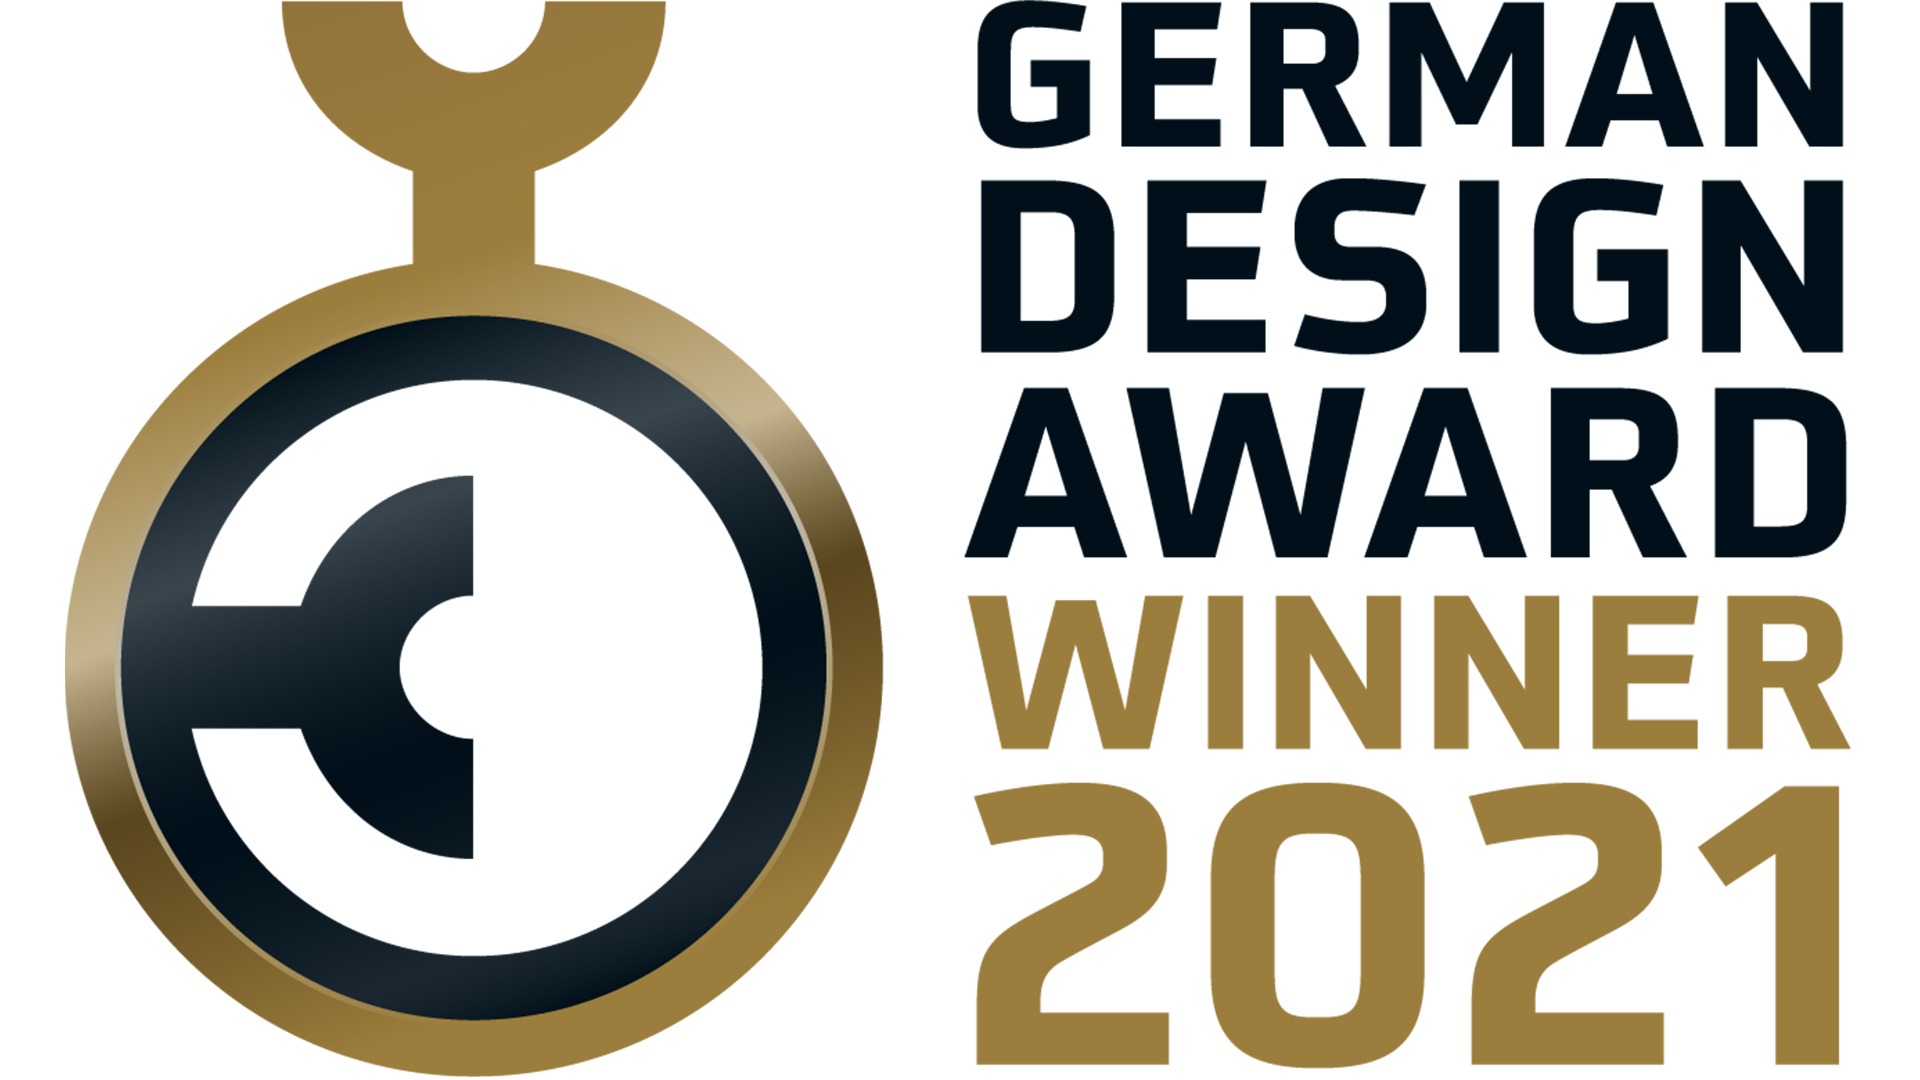 201116_PP_Vitesco-Technologies_German-Desing-Award-2021_-3